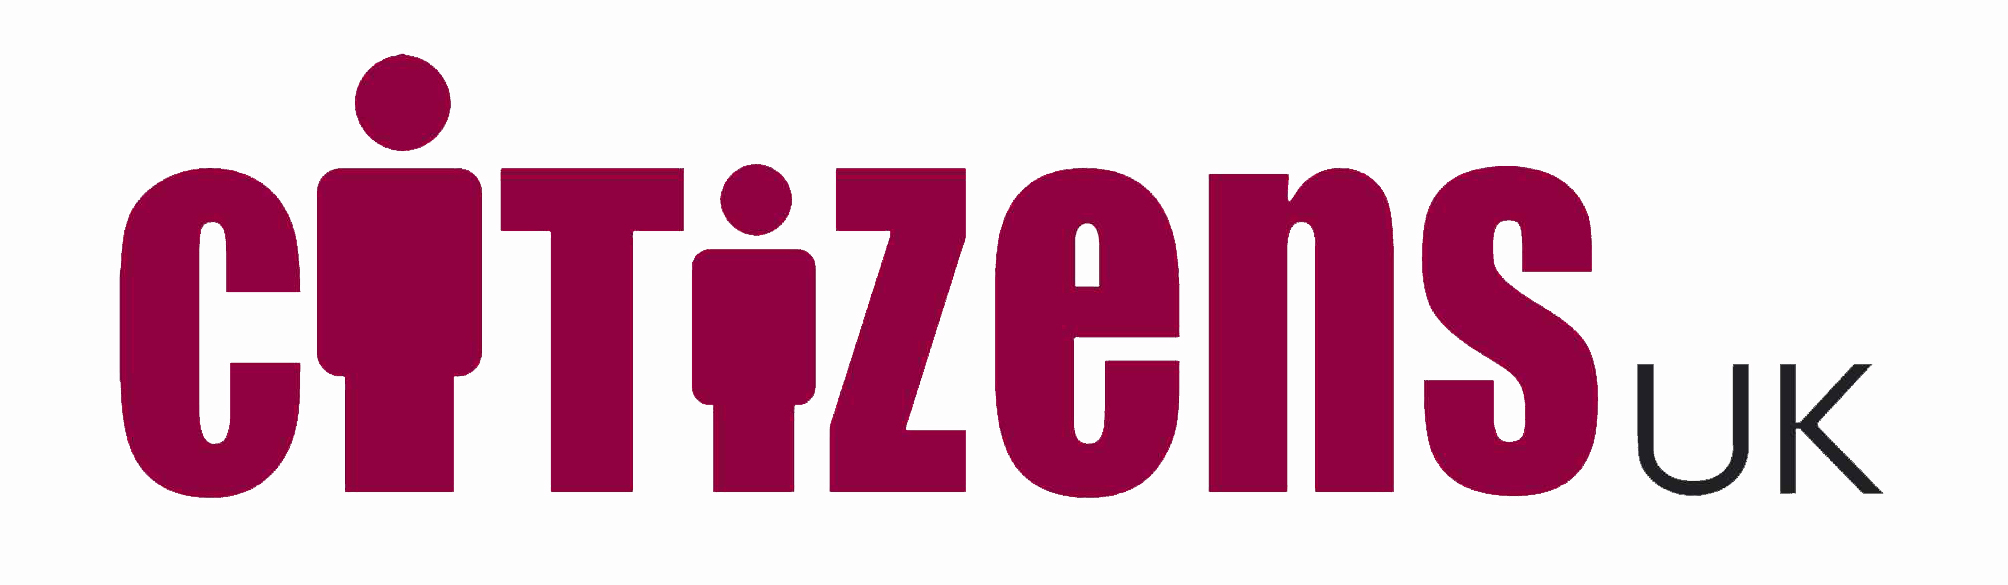 CitizensUK-logo-1